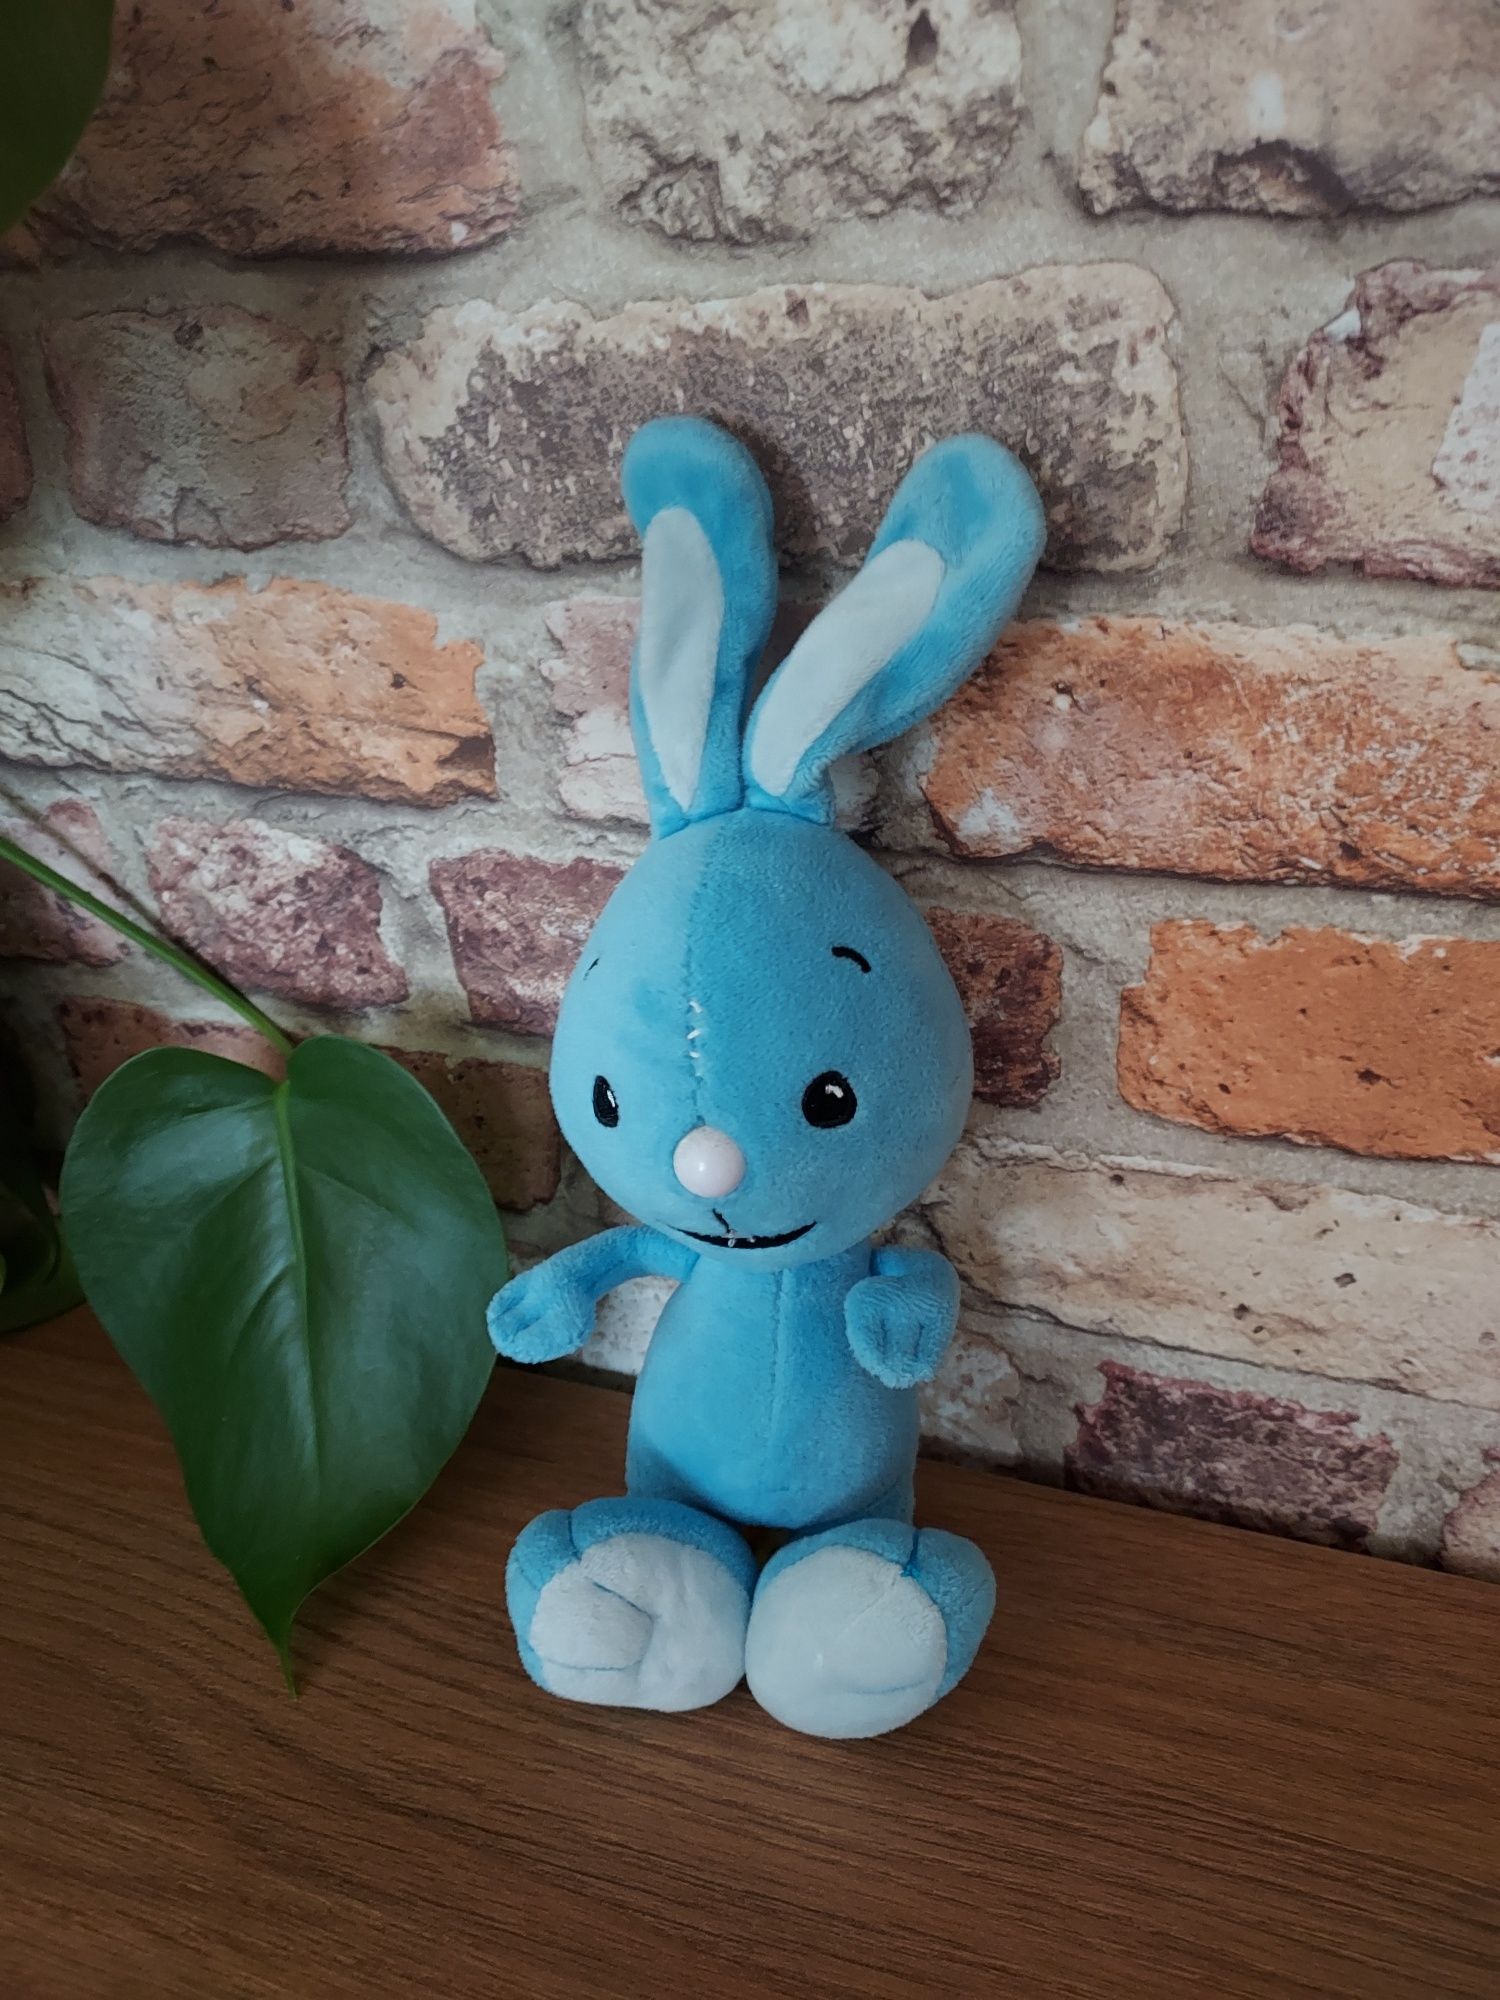 Kikaninchen oryginalny królikok 30 cm maskotka, niebieski królik